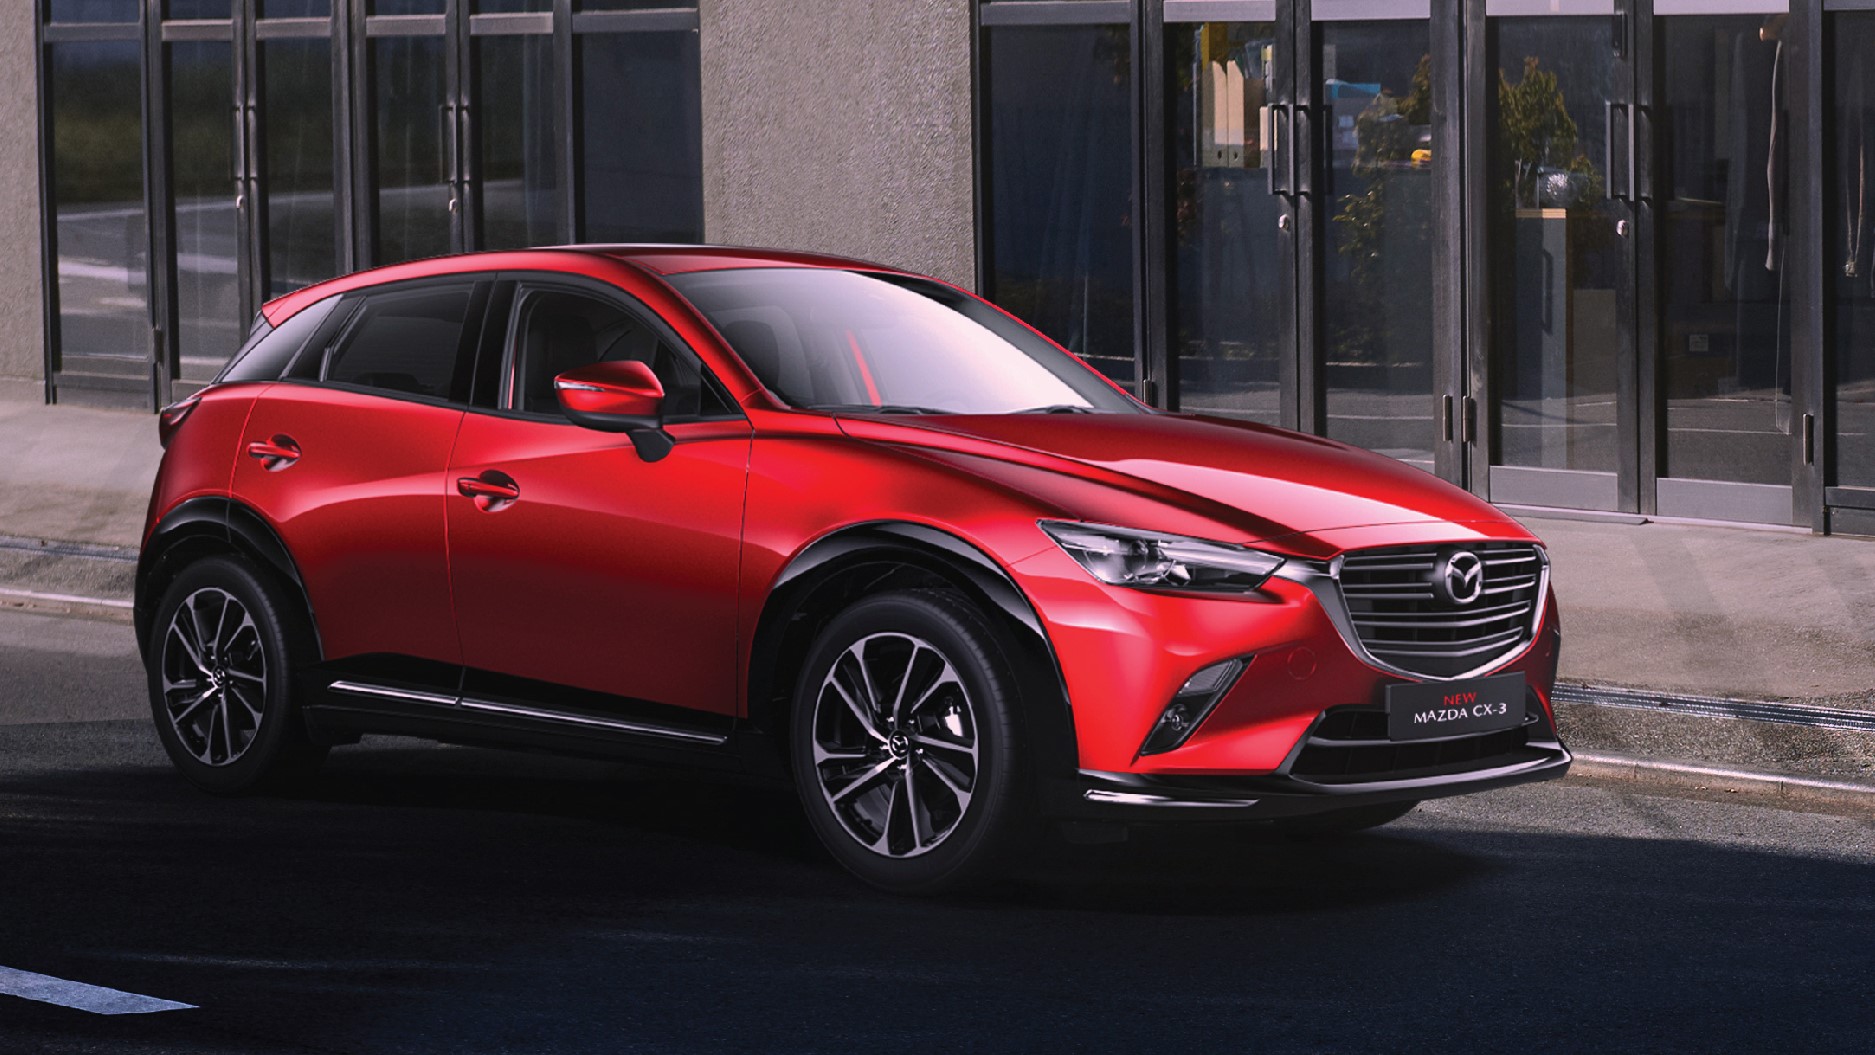 Mazda CX-3 ra mắt phiên bản nâng cấp, khởi điểm từ 524 triệu đồng - Ảnh 1.